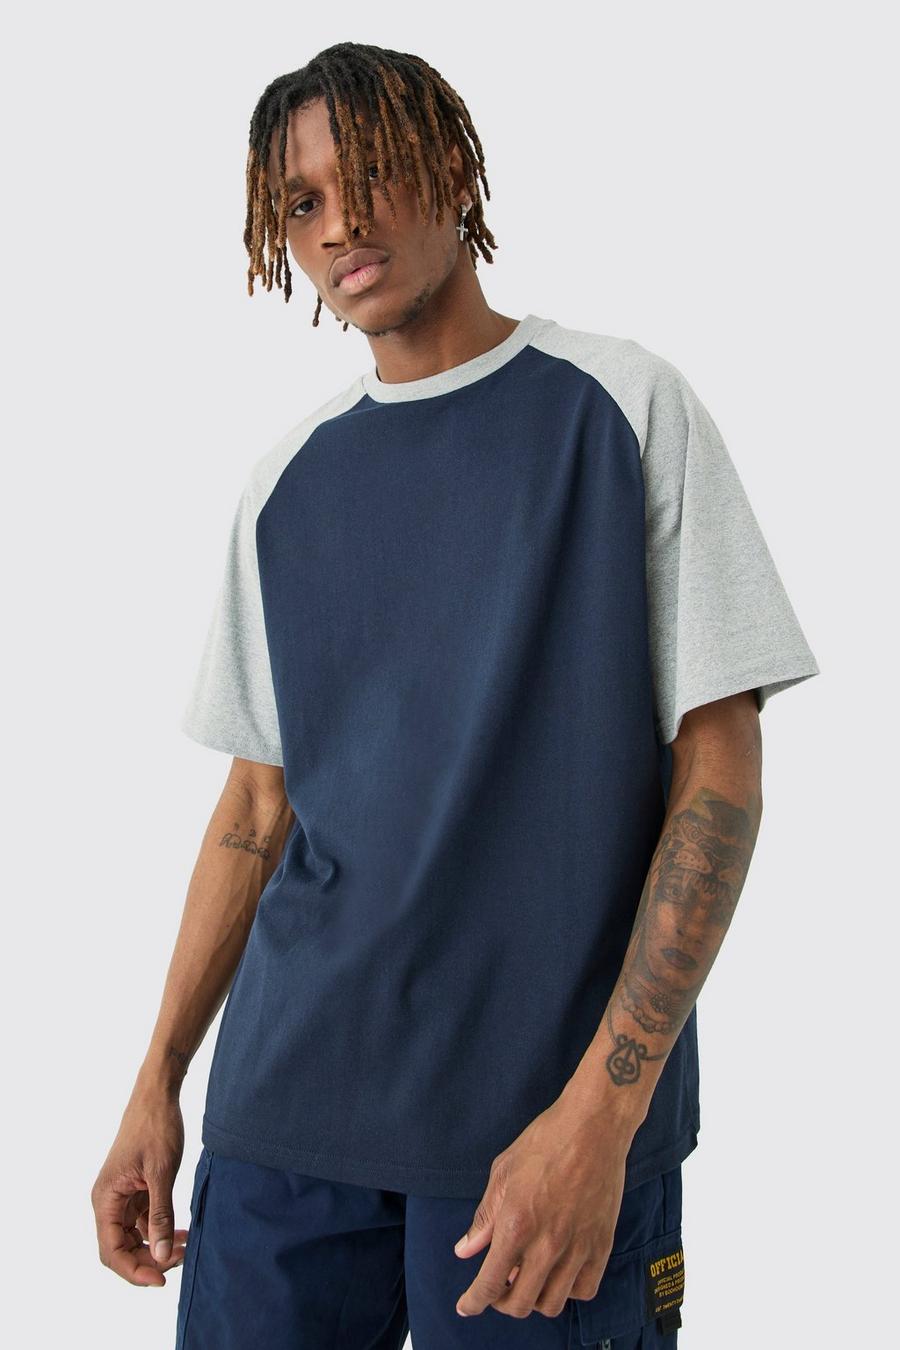 T-shirt Tall a blocchi di colore blu navy con dettagli raglan